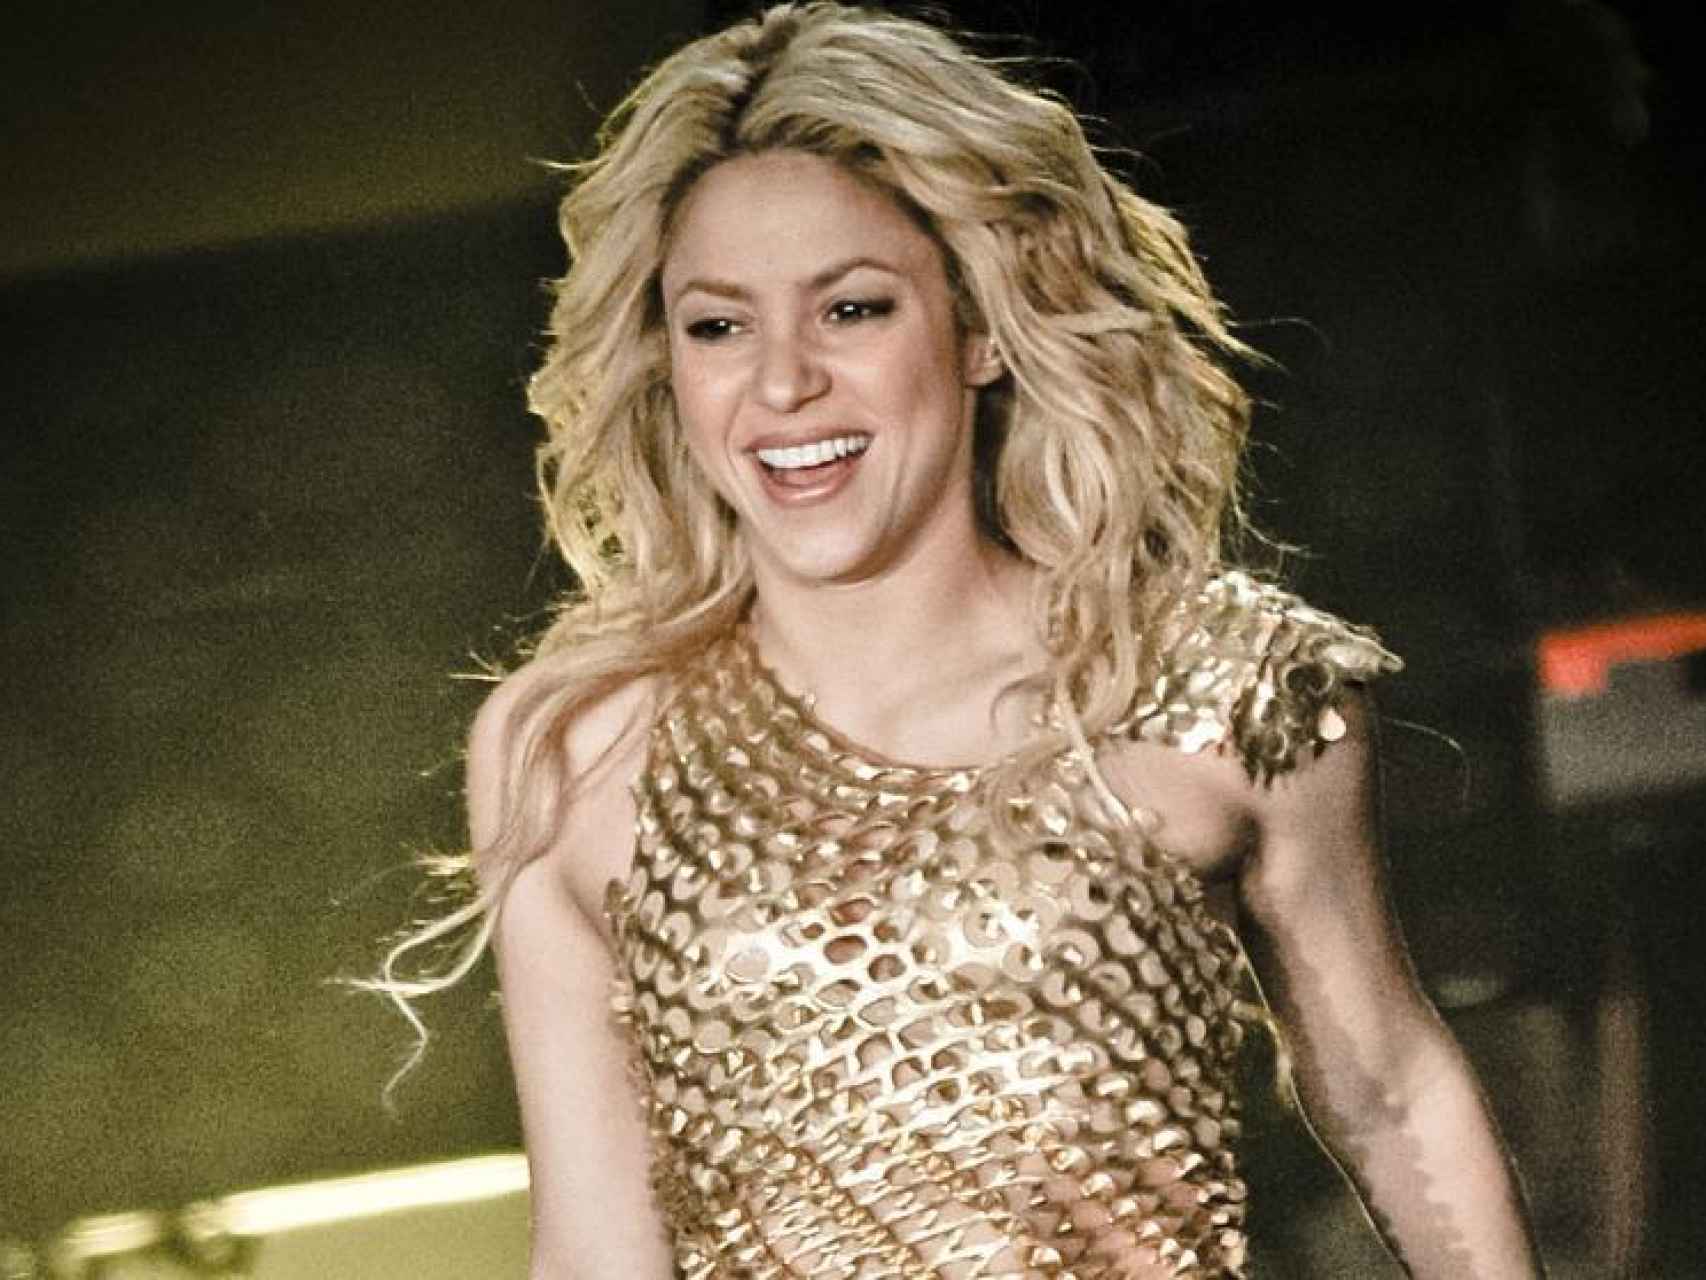 La cantante Shakira en concierto.